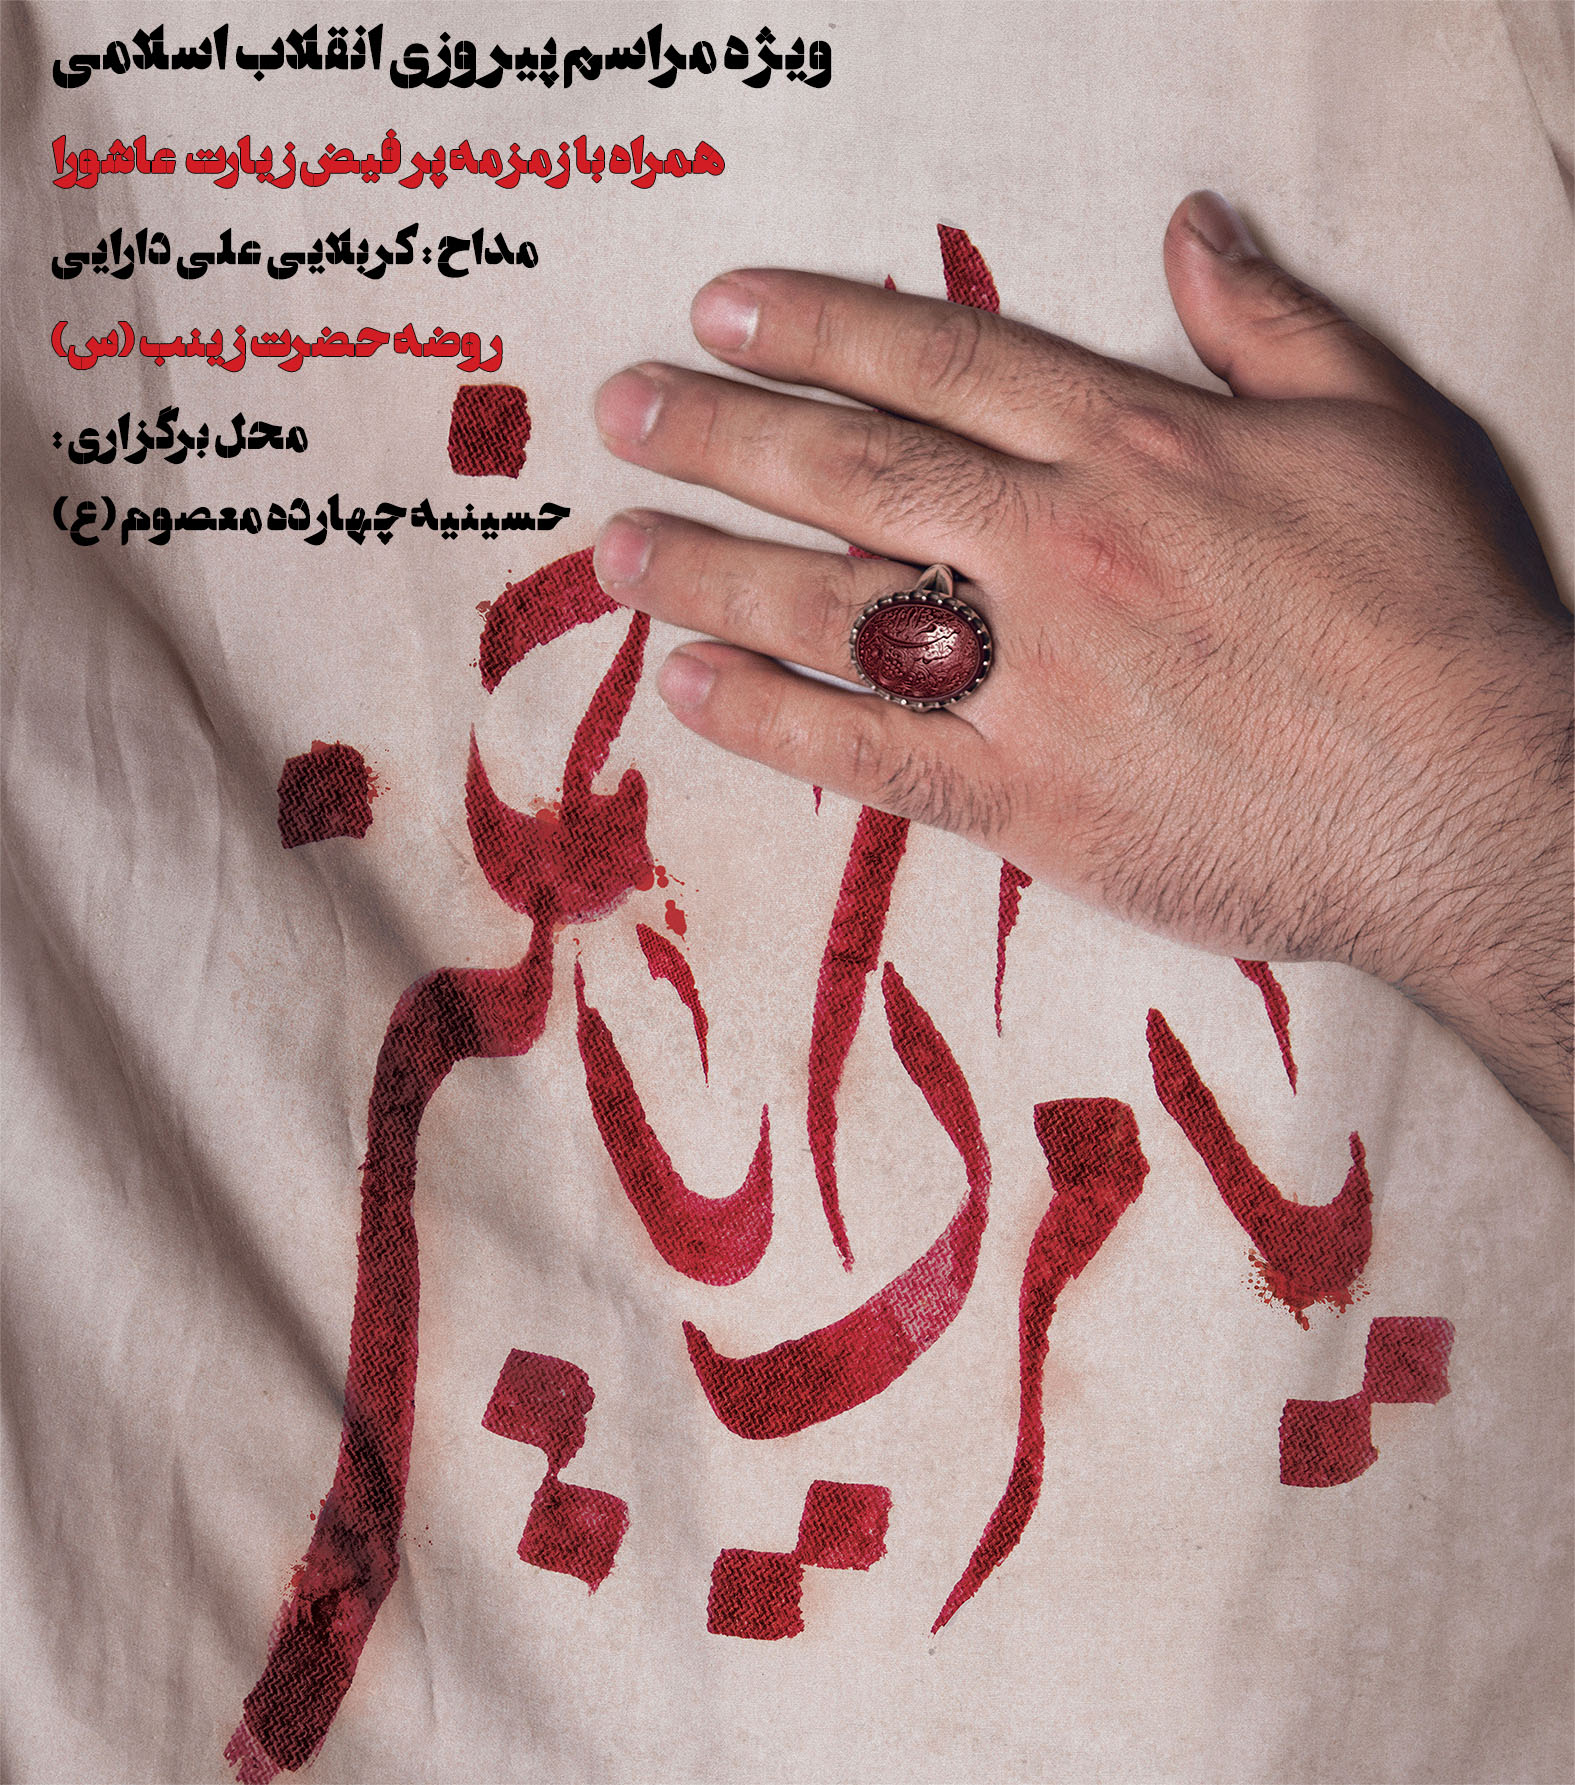 ویژه مراسم پیروزی انقلاب اسلامی | 21 بهمن 94 روضه حضرت زینب سلام الله علیها